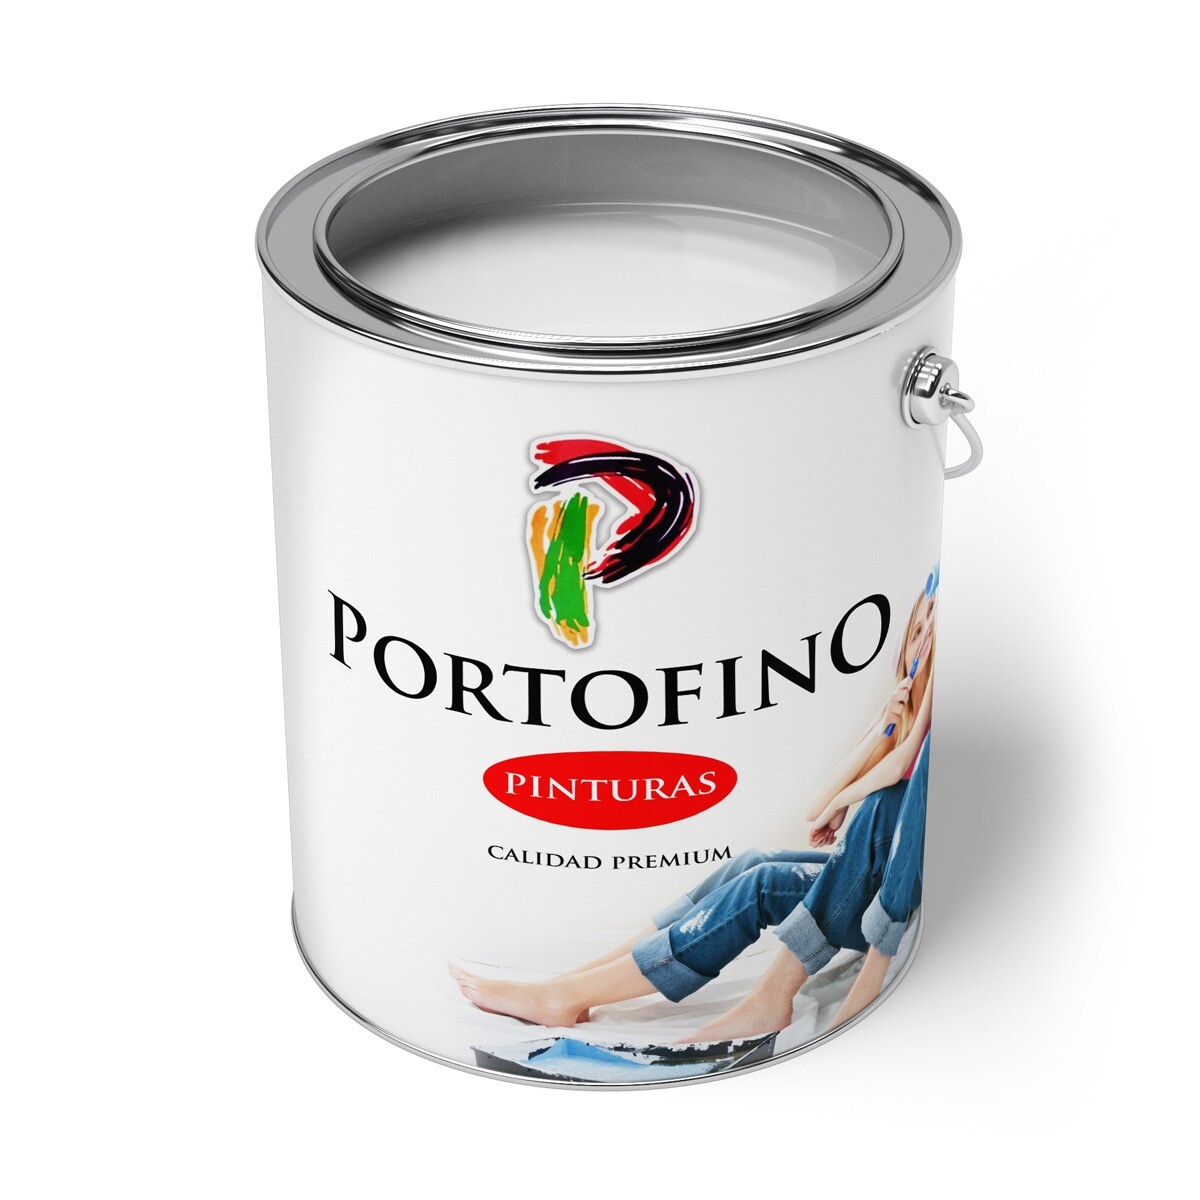 Convertilux Portofino 4 Lt. Tabaco 